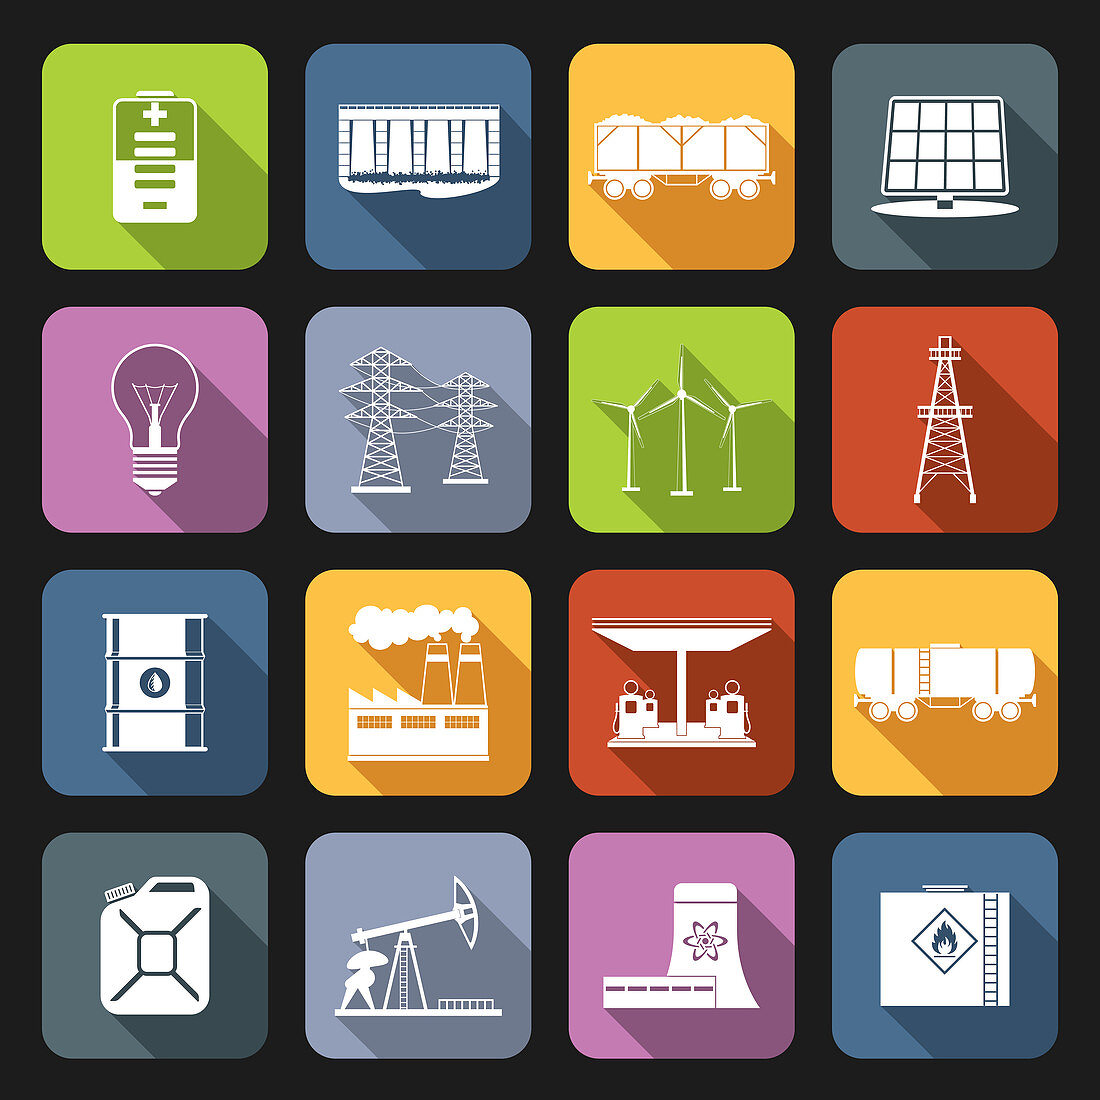 Energy icons, illustration